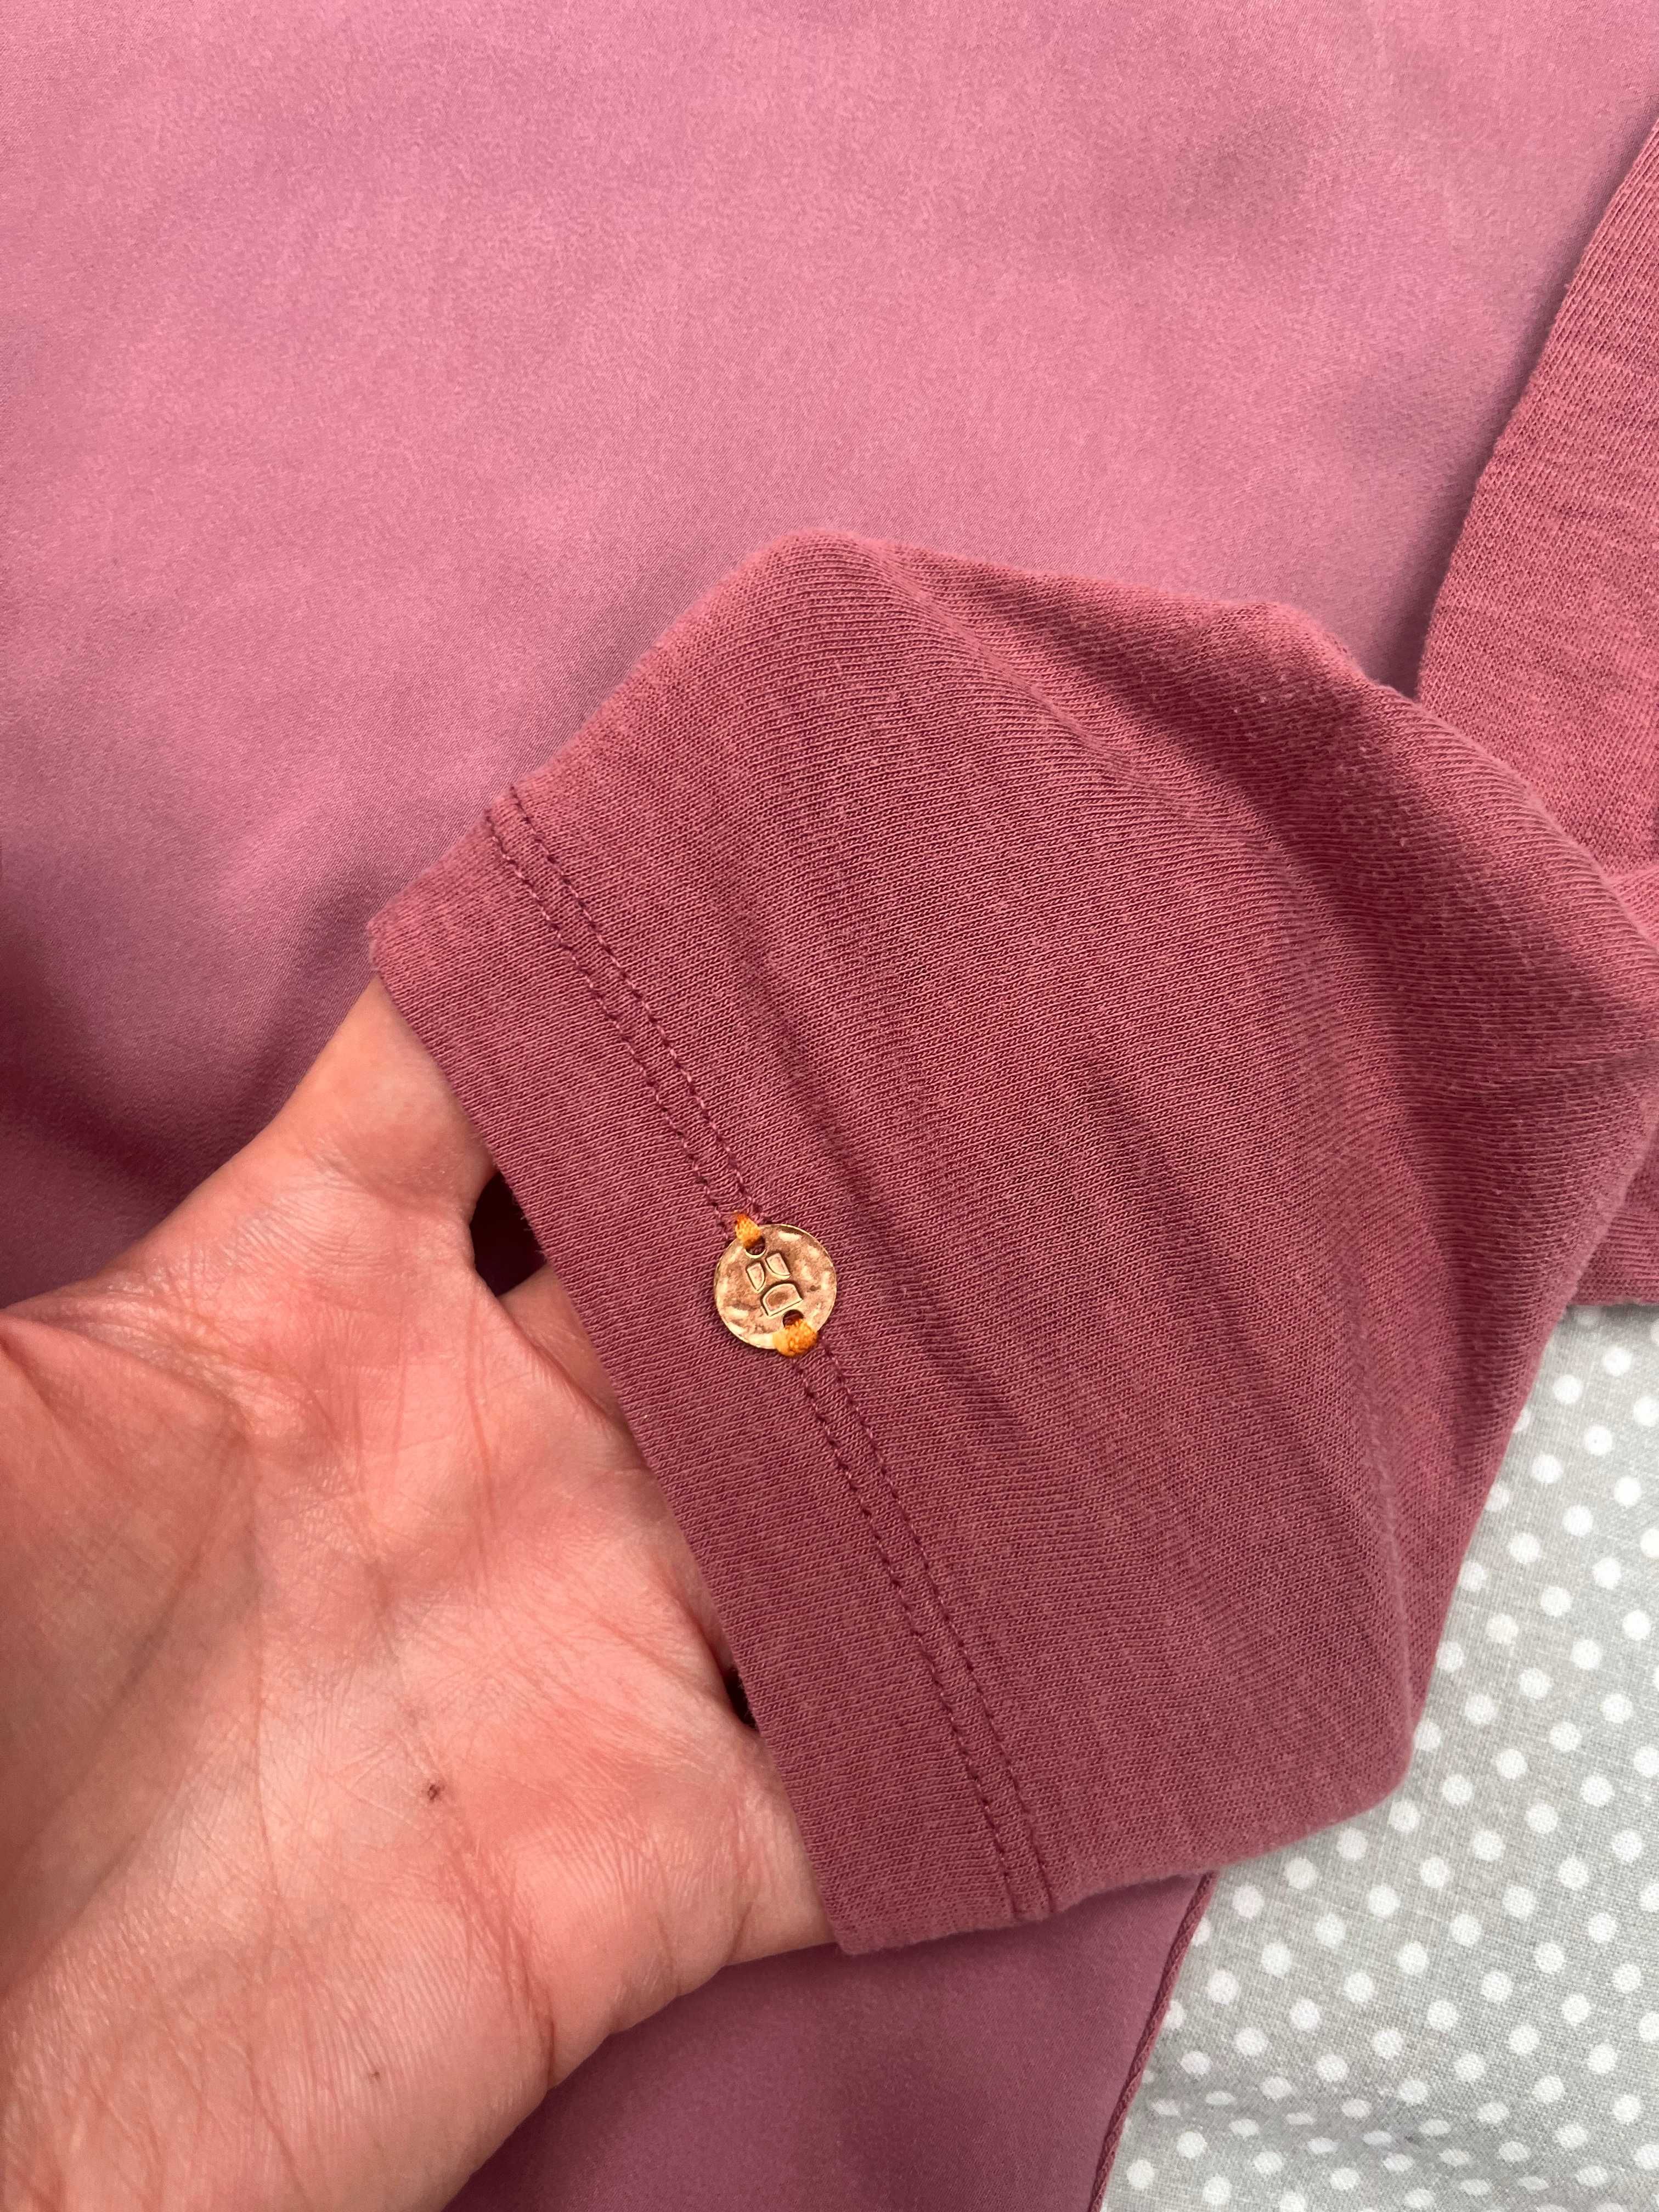 Hugo Boss oryginalna bluzka M/L ciekawa wzór łączona tkanina rękaw 3/4